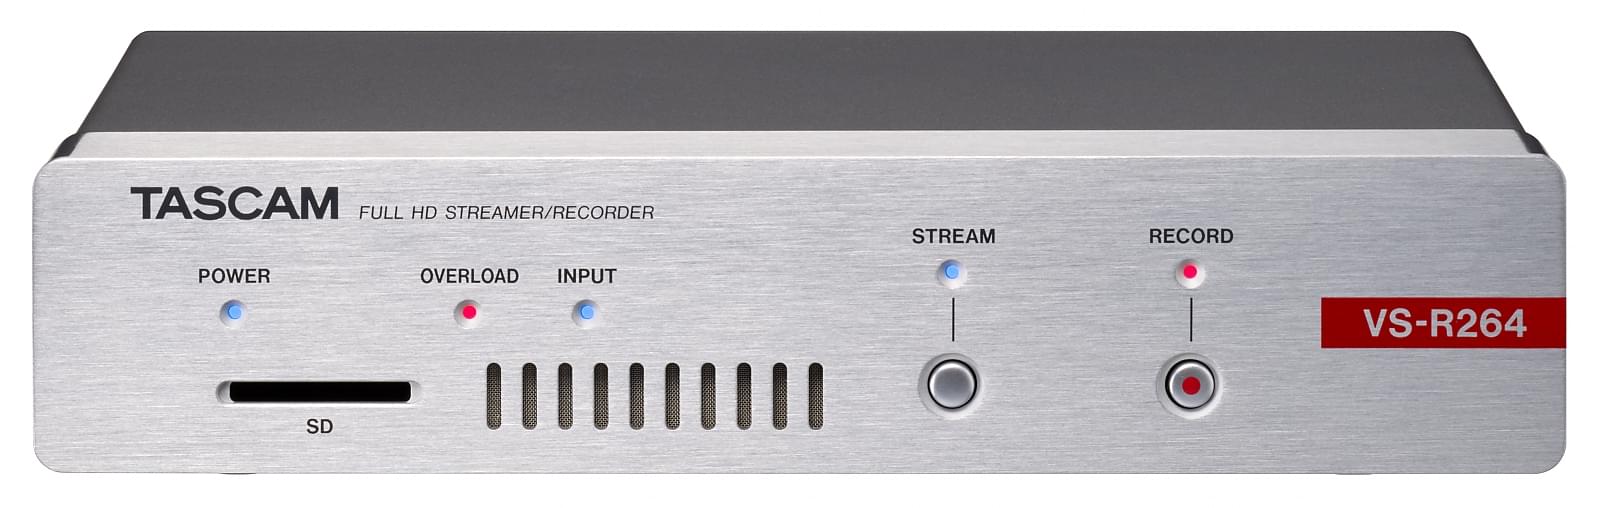 Encoder, Decoder, Streamer und -Recorder für Video in Full-HD | Tascam VS-R264